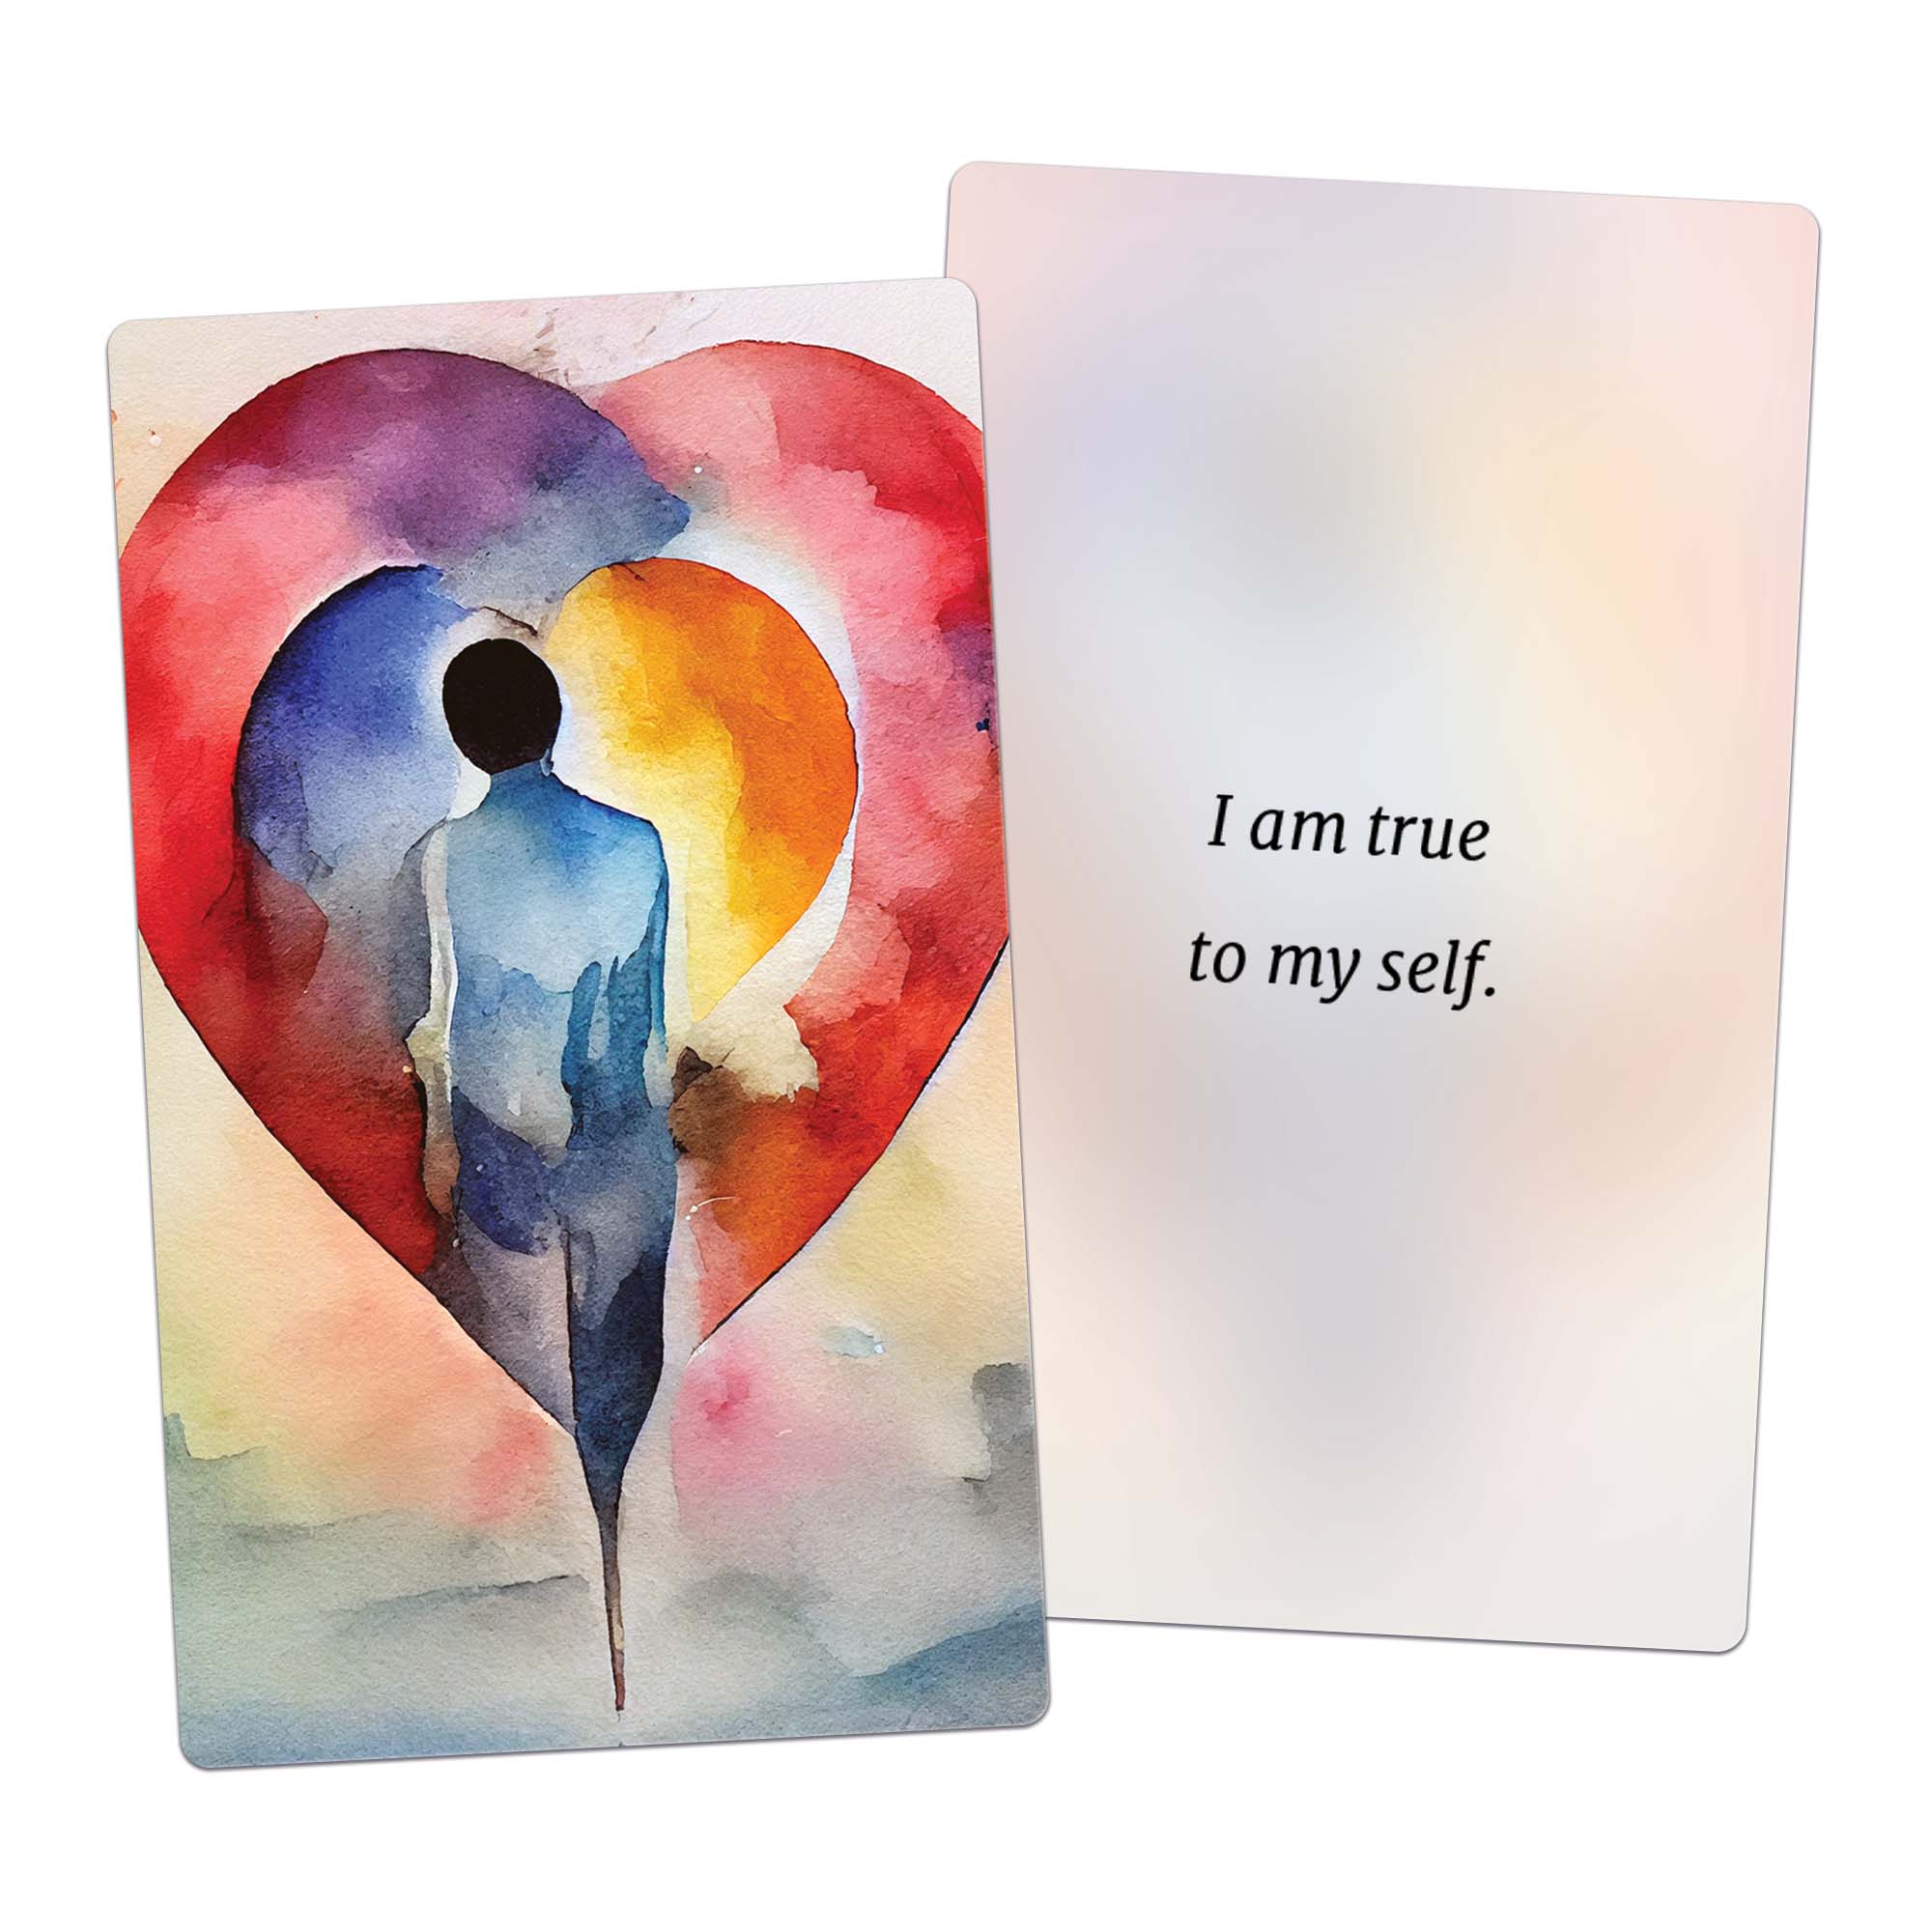 I am true to my self. (affirmation card)